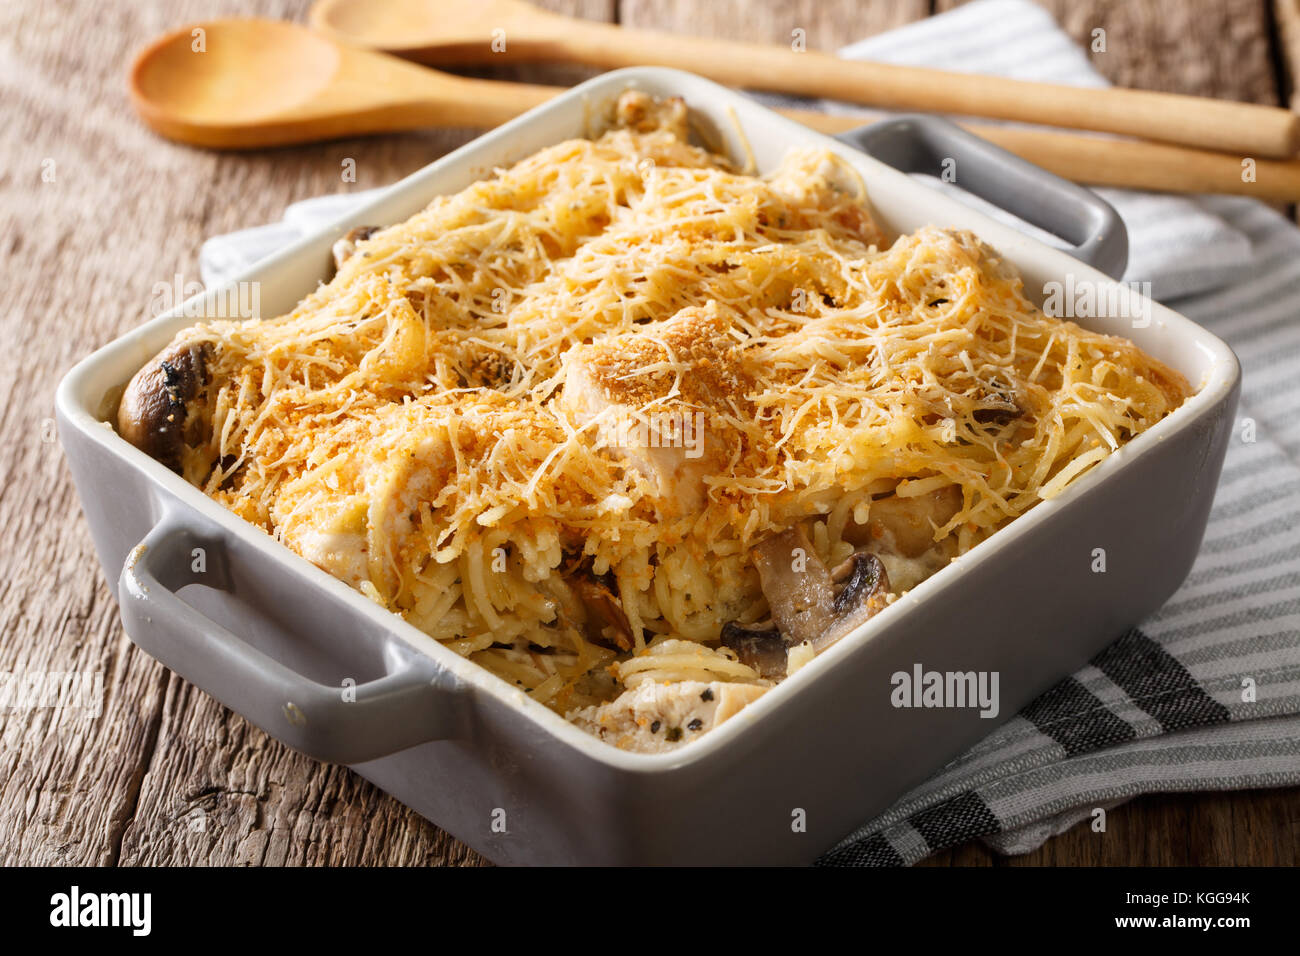 Tetrazzini à américain avec des spaghetti, champignons, fromage, poulet close-up dans une plaque pour la cuisson sur une table horizontale. Banque D'Images